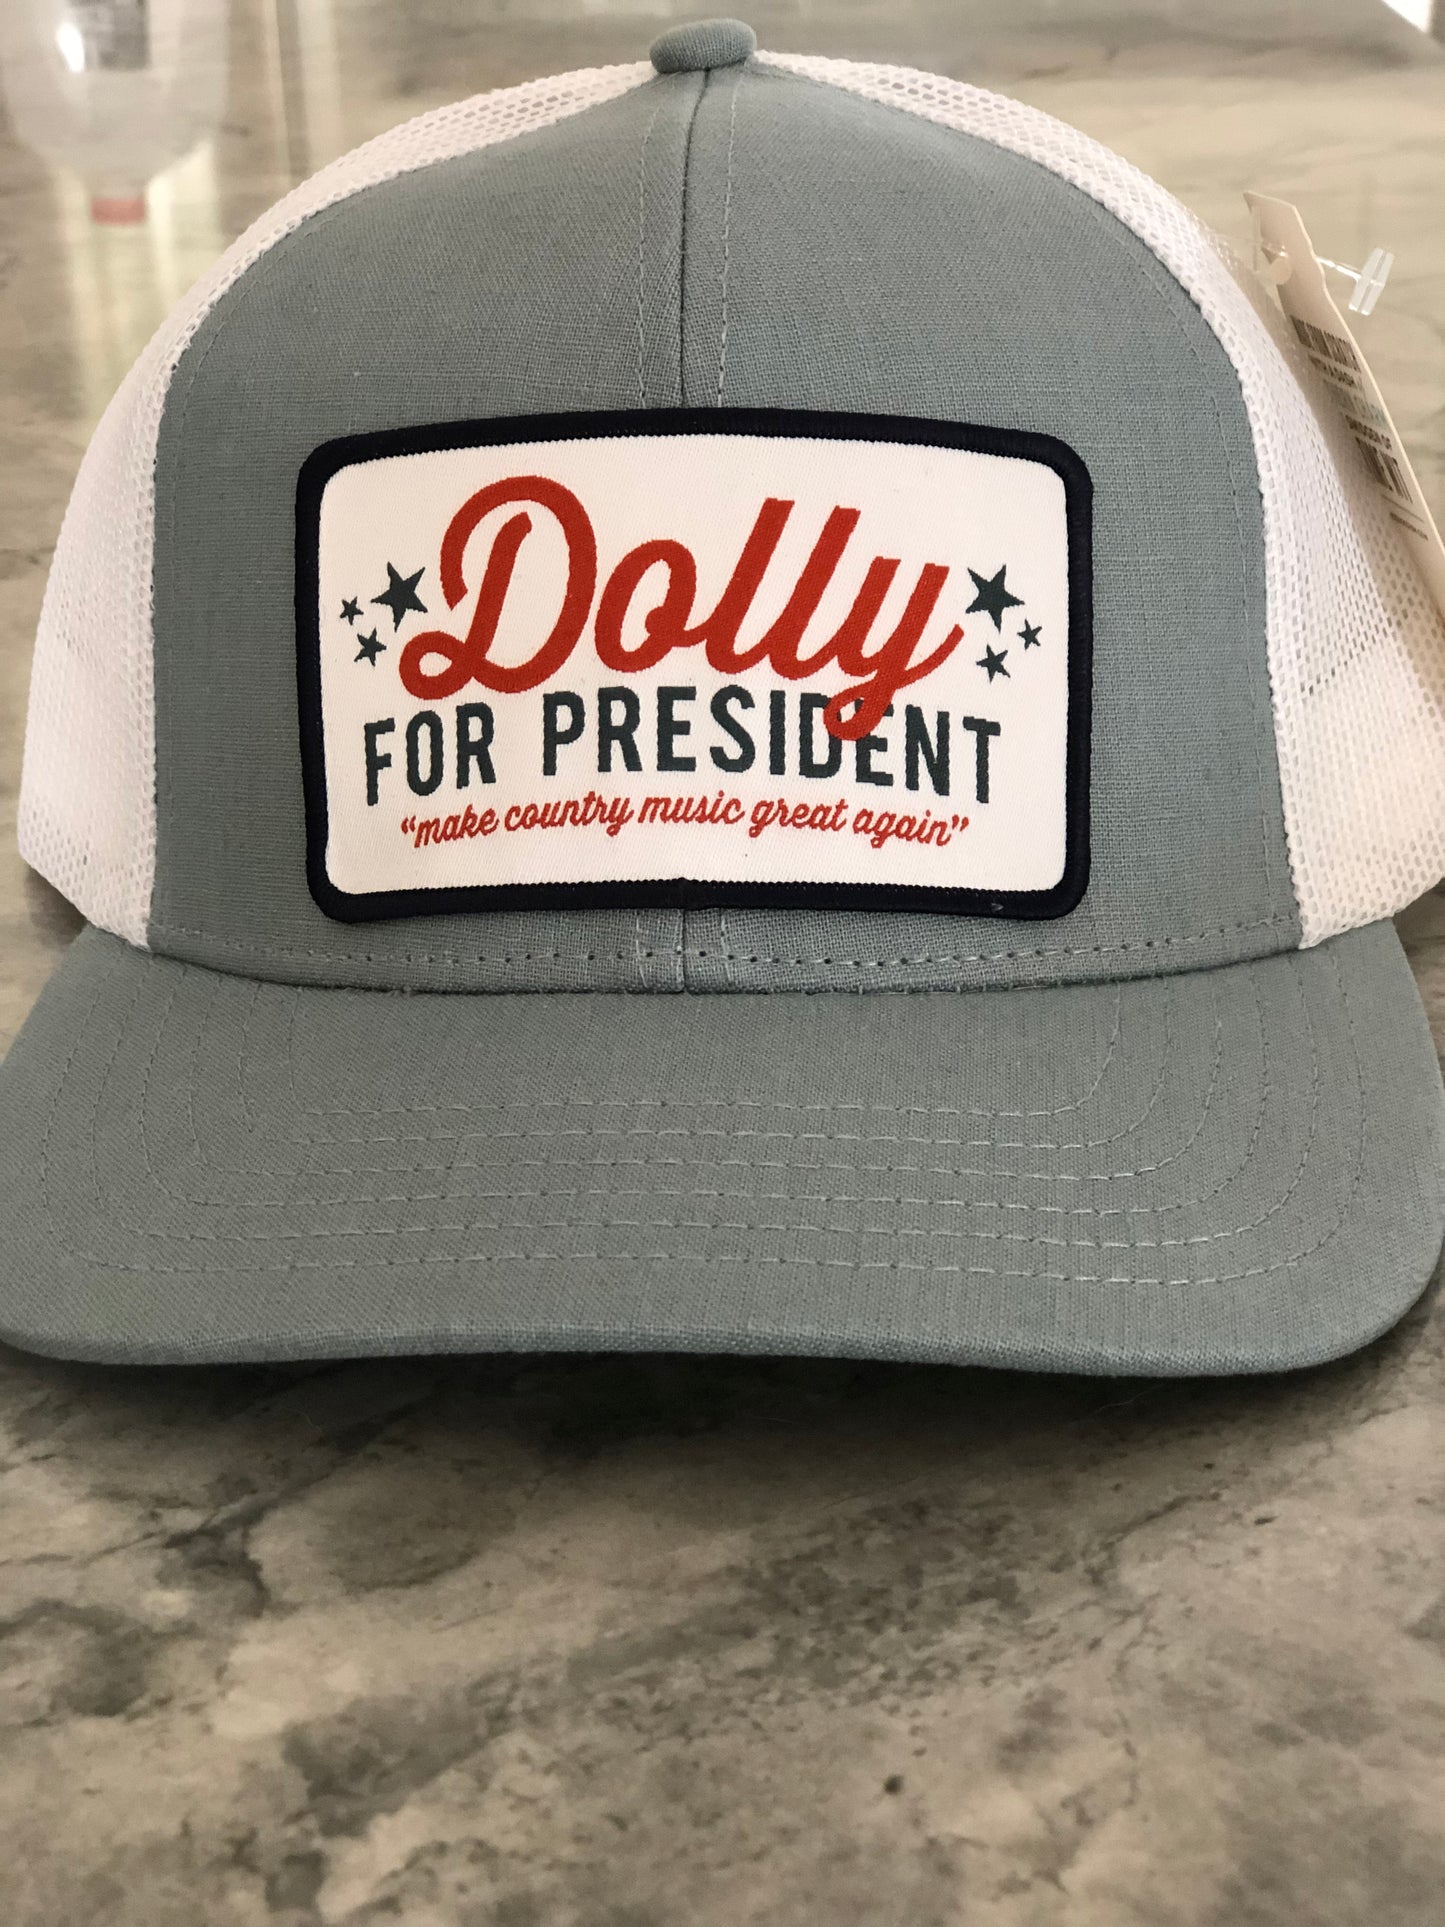 Dolly for President cap